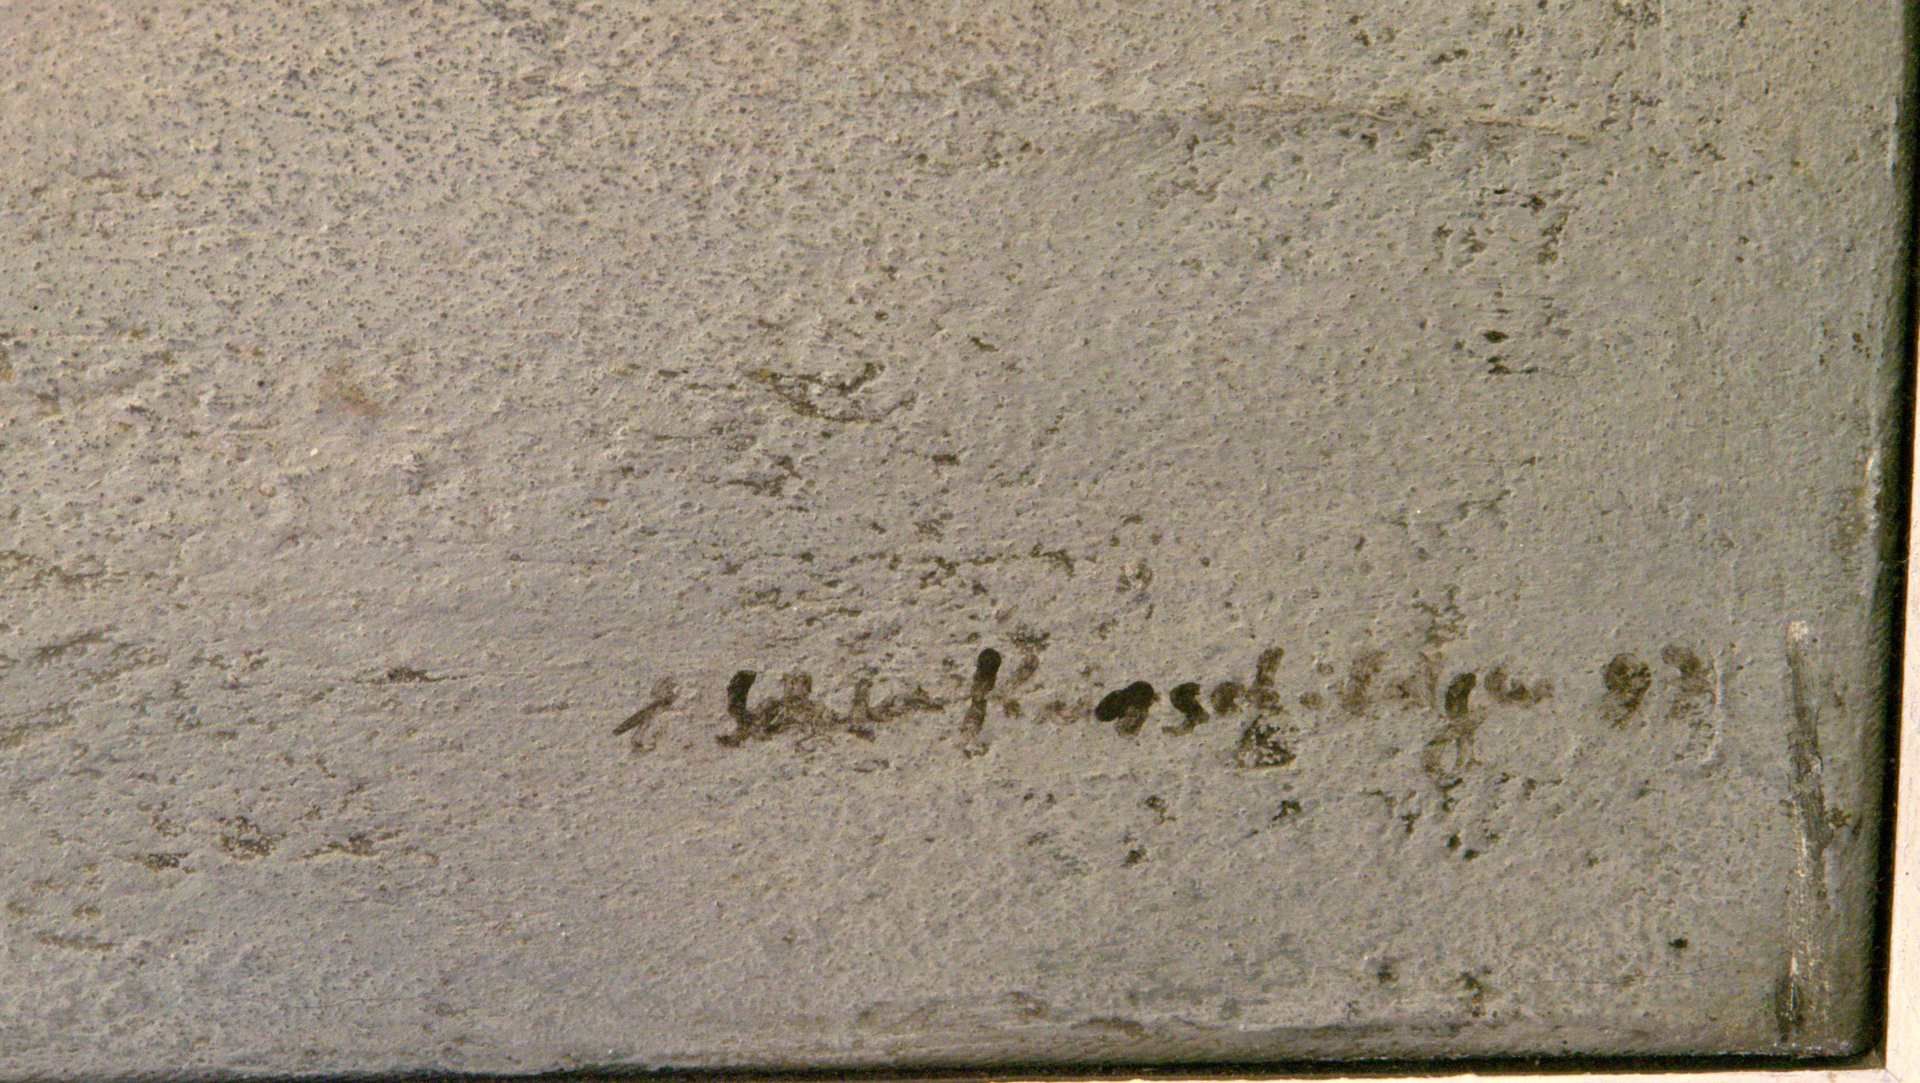 Mischtechnik auf Leinwand, u. re. unles. sig., dat. '87ca. 60 x 55 cm - Bild 2 aus 2